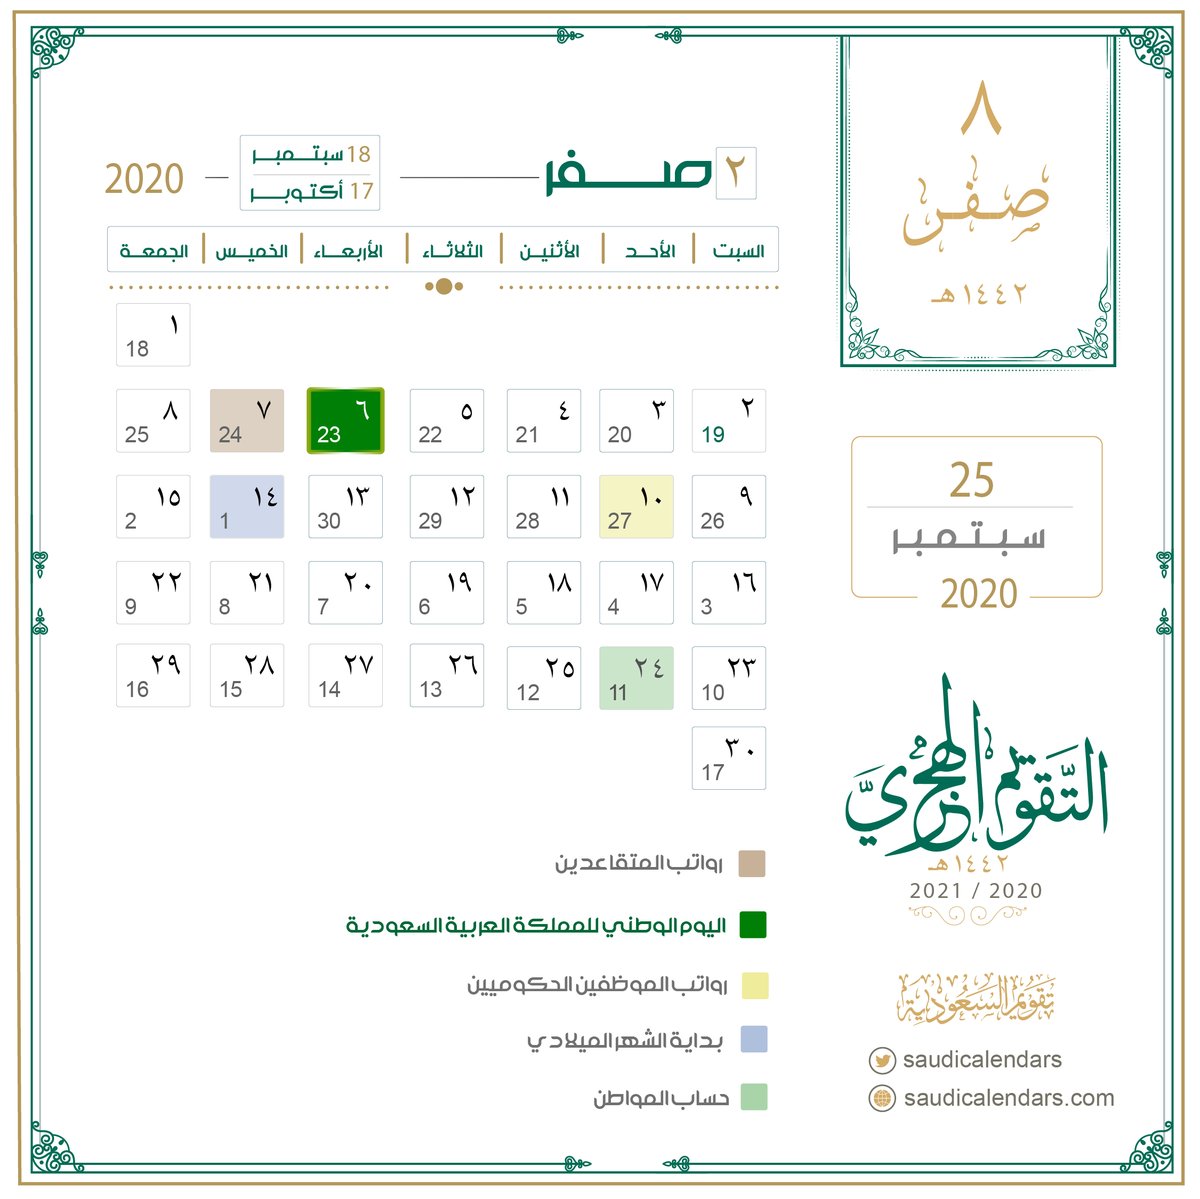 تقويم السعودية On Twitter تاريخ اليوم الخميس 8 صفر 2 1442 هـ الموافق 25 سبتمبر 9 2020 م أيام متبقية الراتب بعد غد التأهيل بعد غد